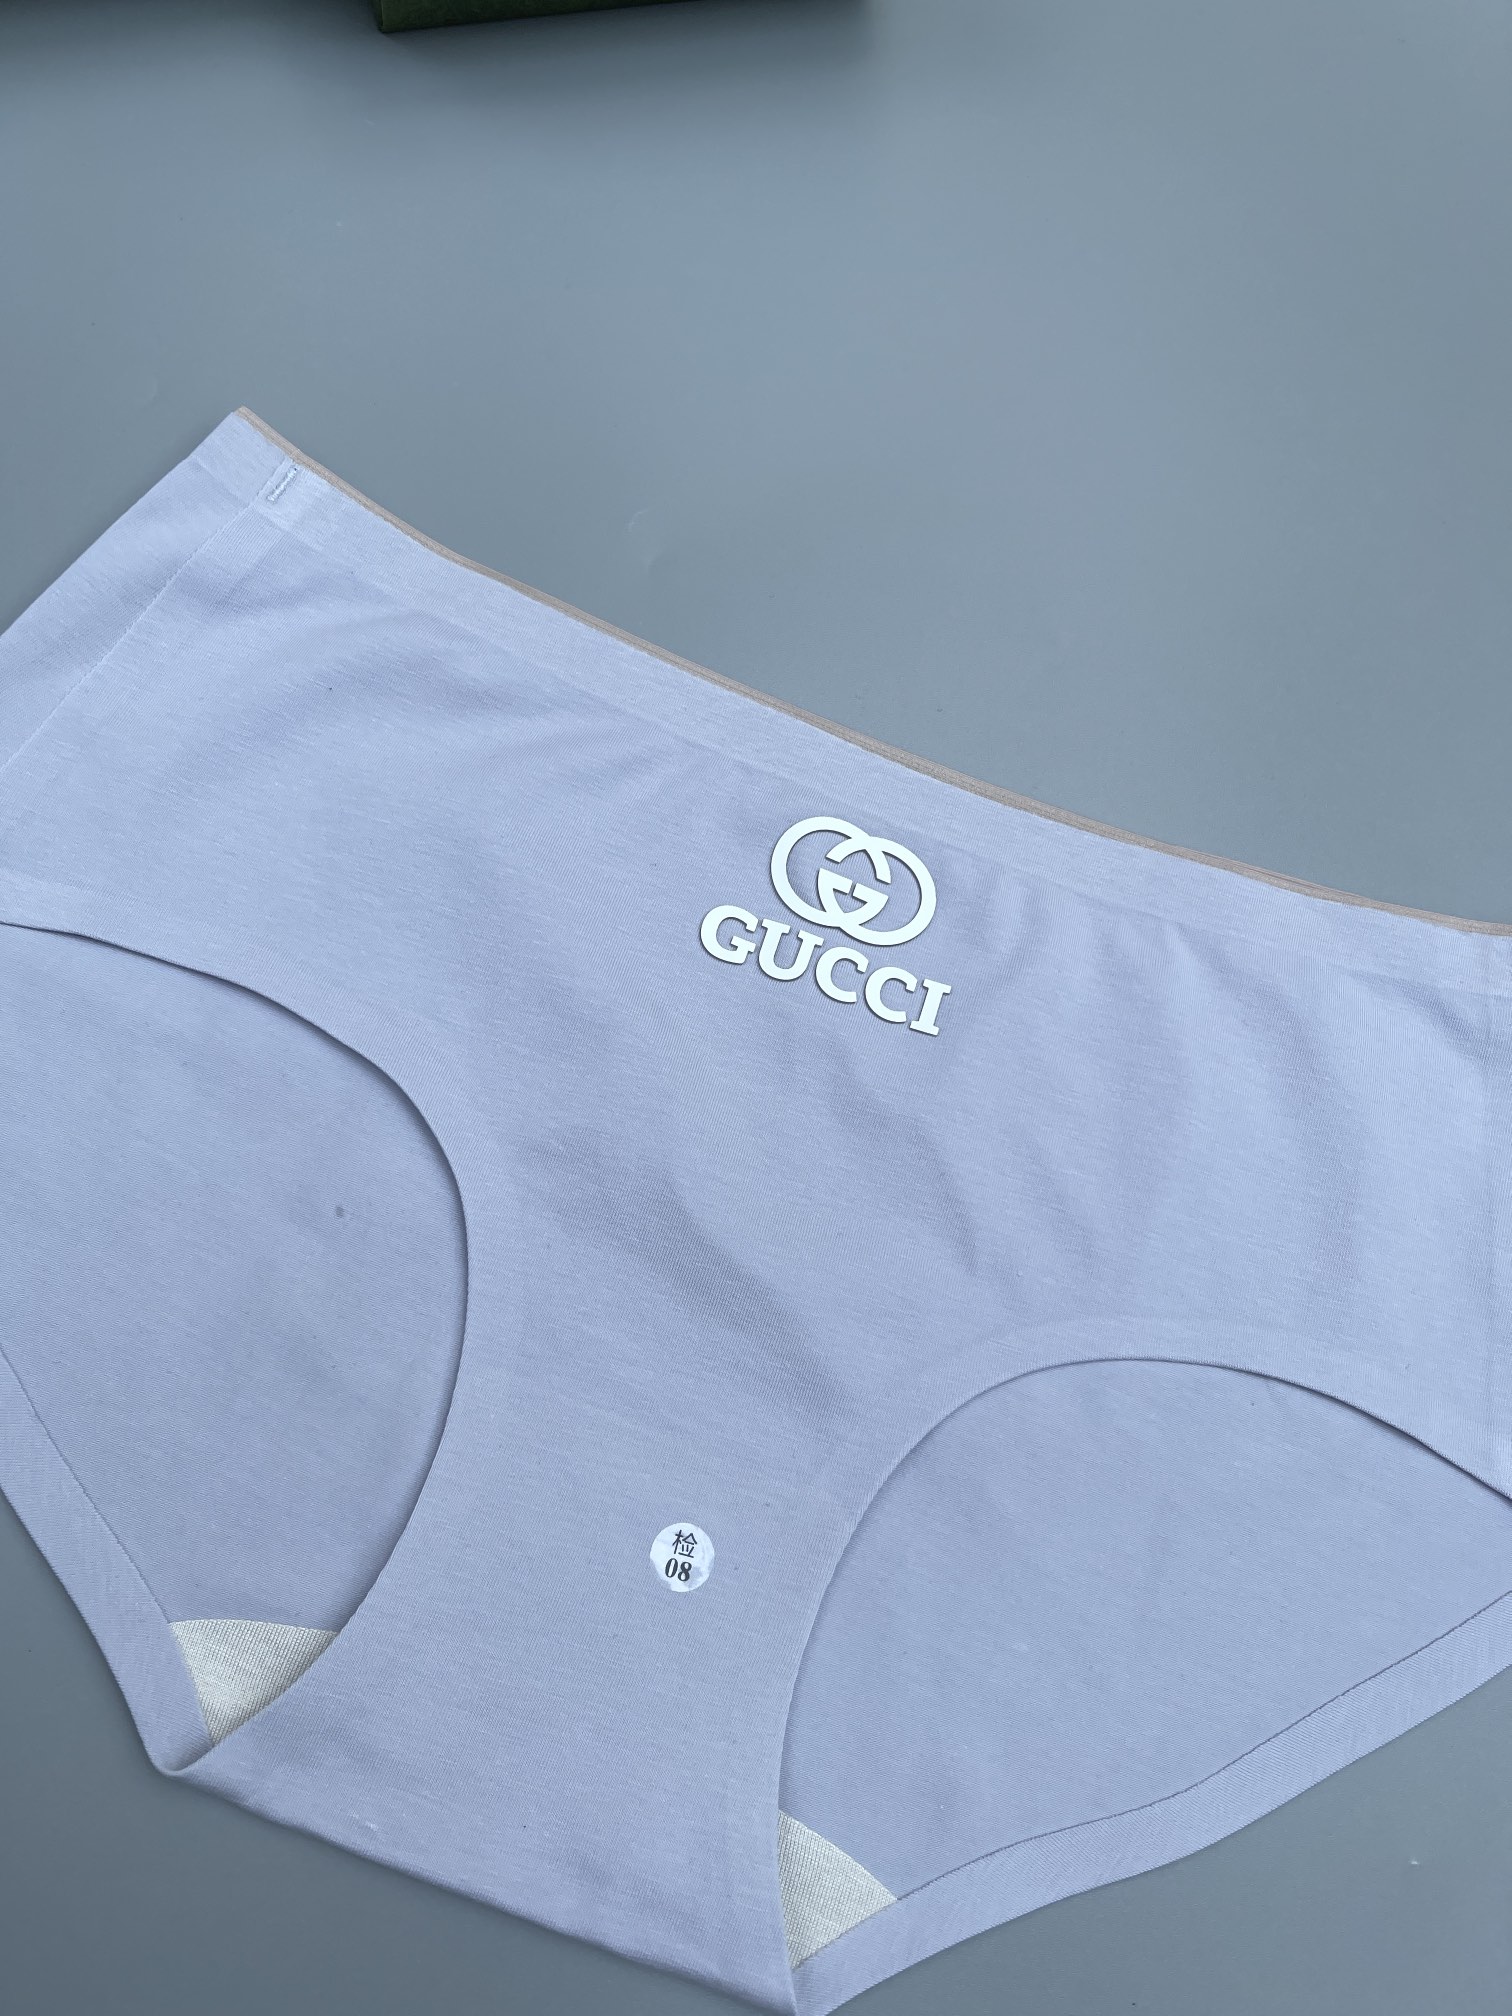 新品女款GUCCI古奇专柜最新款最新3D滴胶款绝对的原单品质全手工切割工艺专柜订制外贸国外订单原单品质科